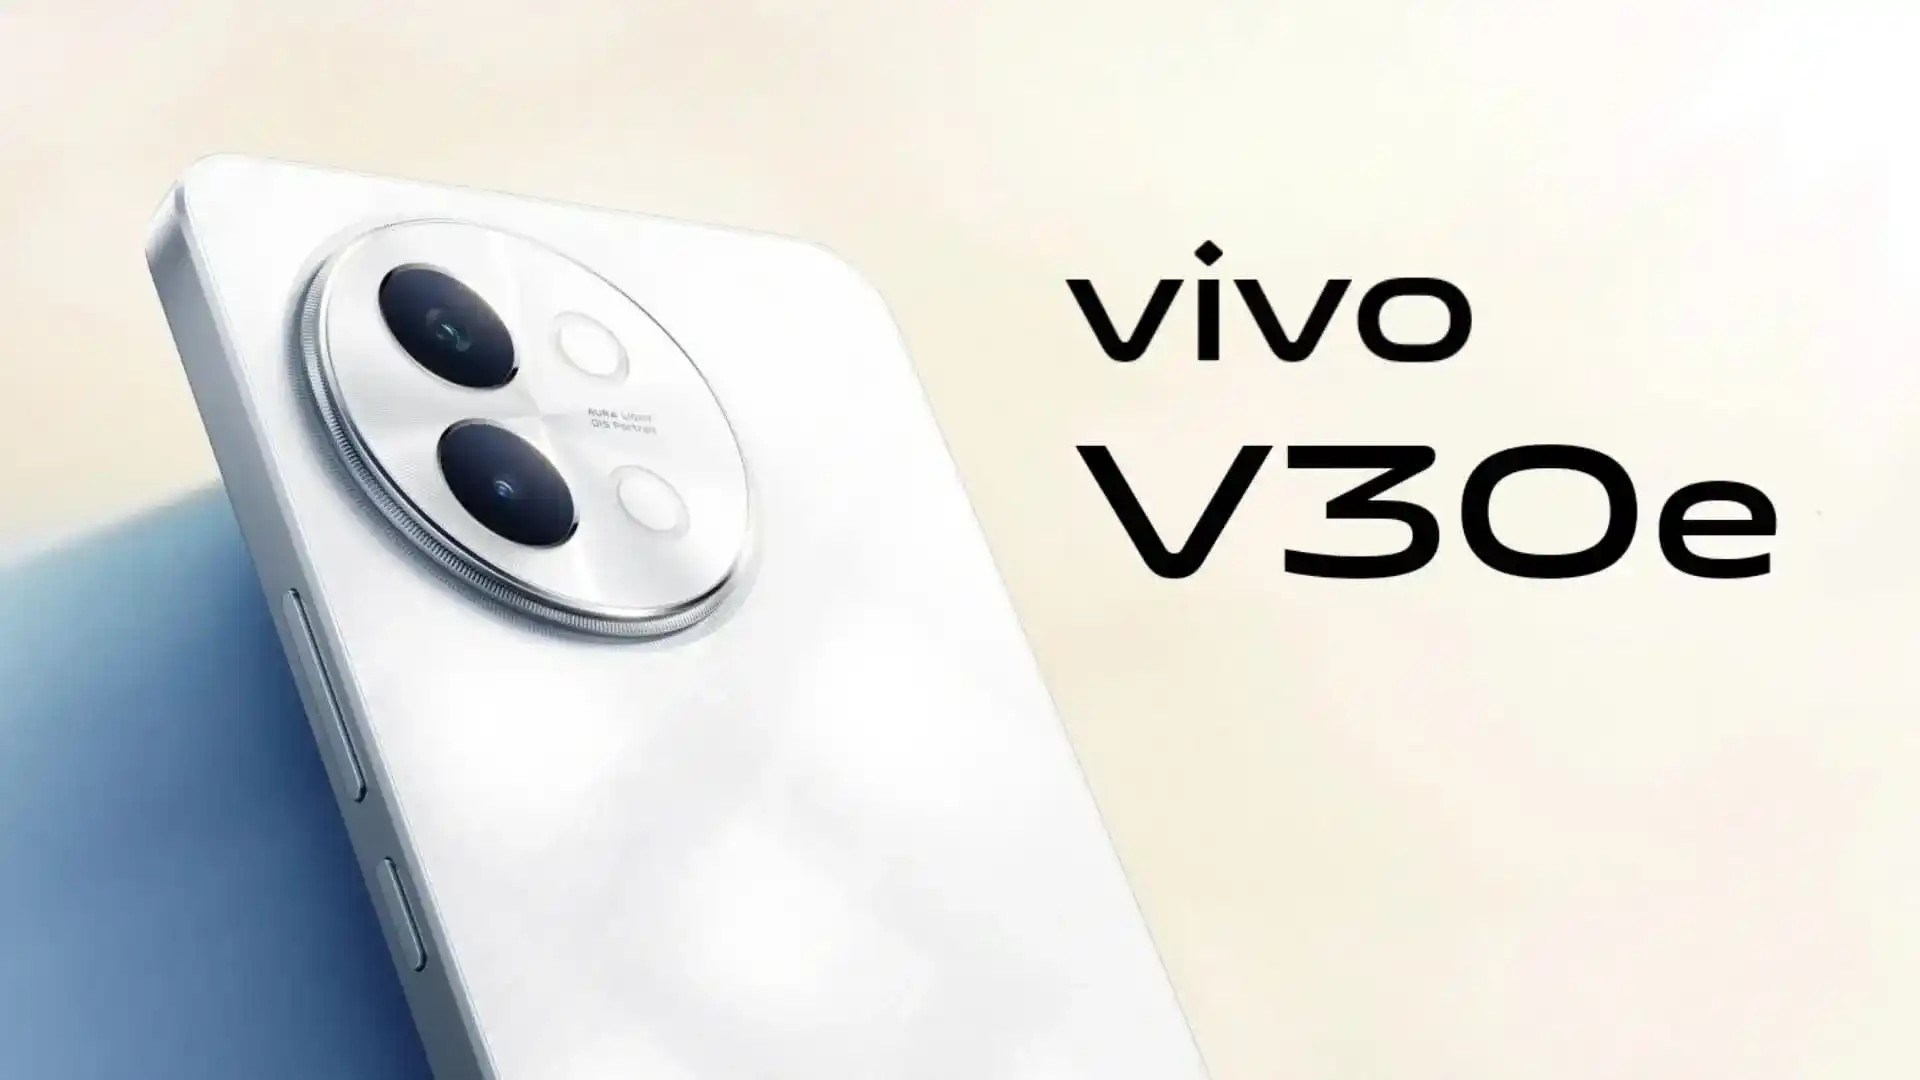 Thiết kế vivo V30e lộ diện: Màu Artistic Red bắt mắt, màn hình cong xịn sò như Galaxy S24 Ultra, camera selfie 50MP